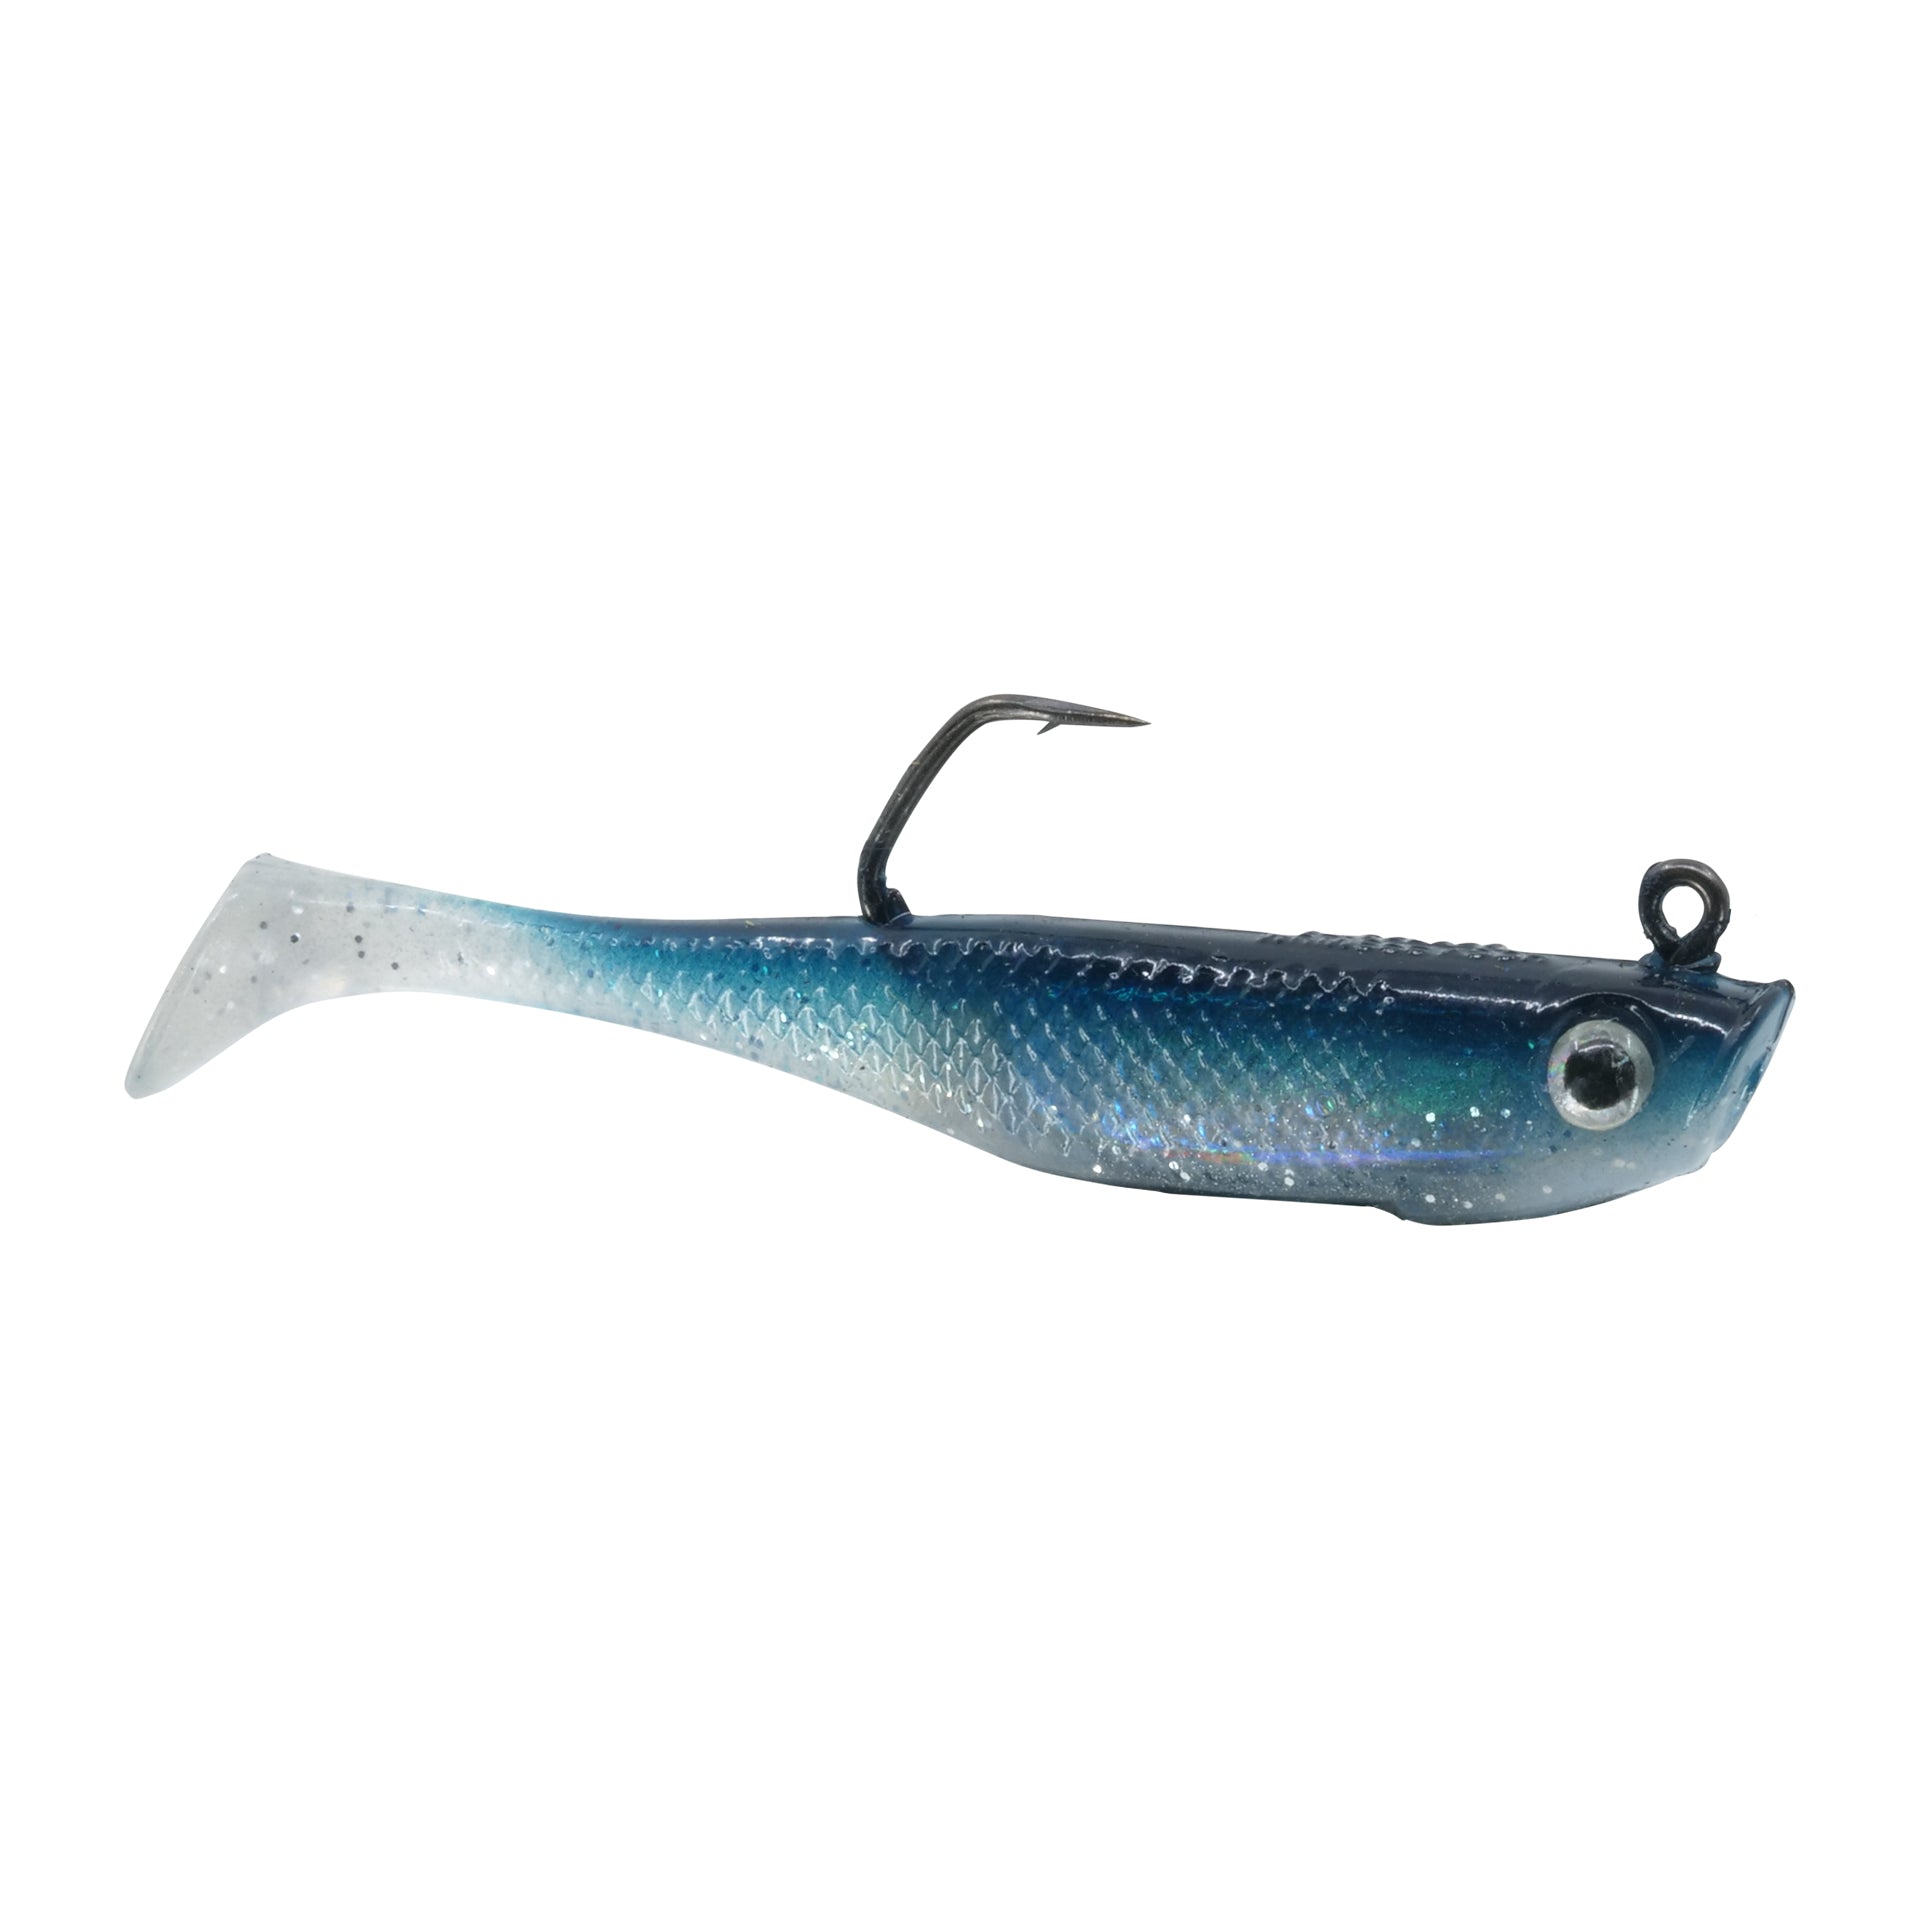 Striper Baits: Best Mackerel Imitations #119 – Hogy Lure Company Online Shop